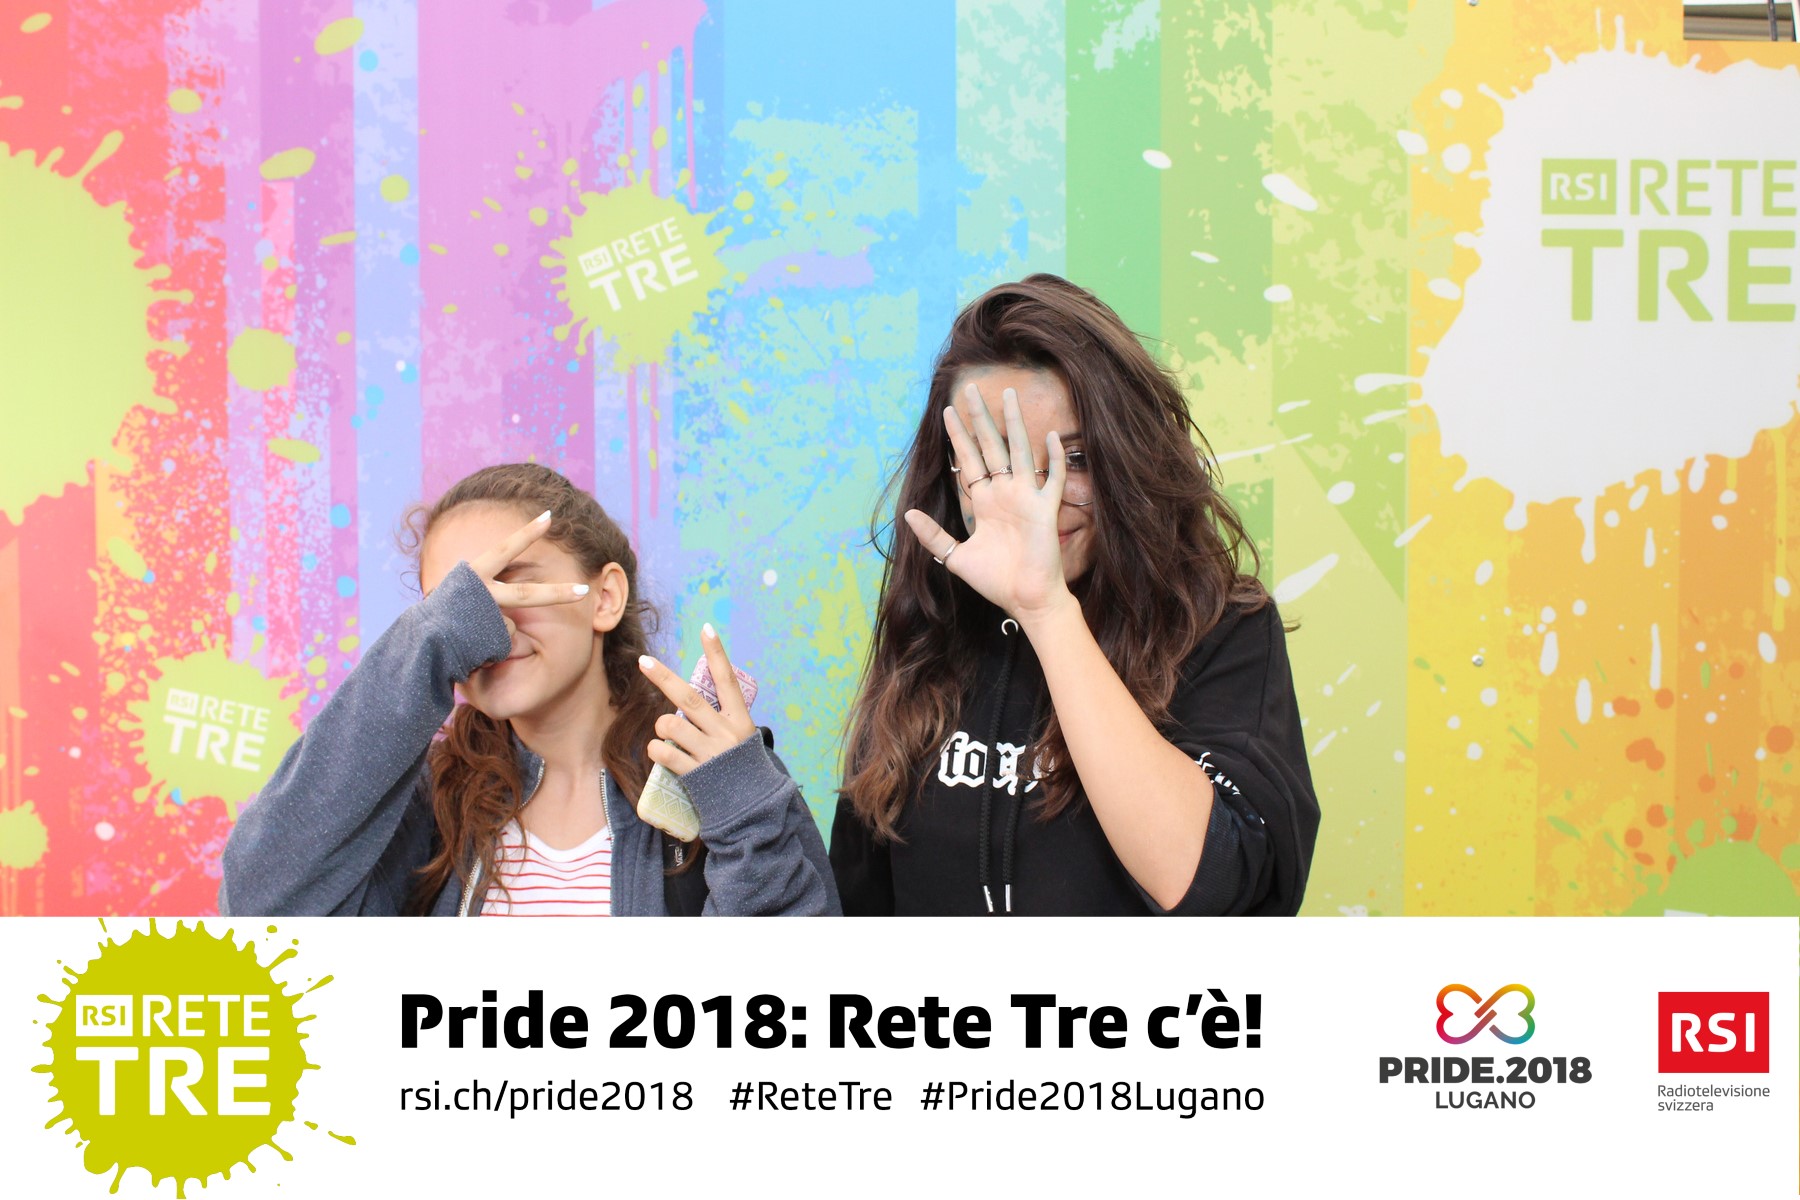 Rivedi tutte le foto scattate da Rete Tre al Pride 2018 su rsi.ch/retetre #RSIReteTre #Pride2018Lugano. Foto: